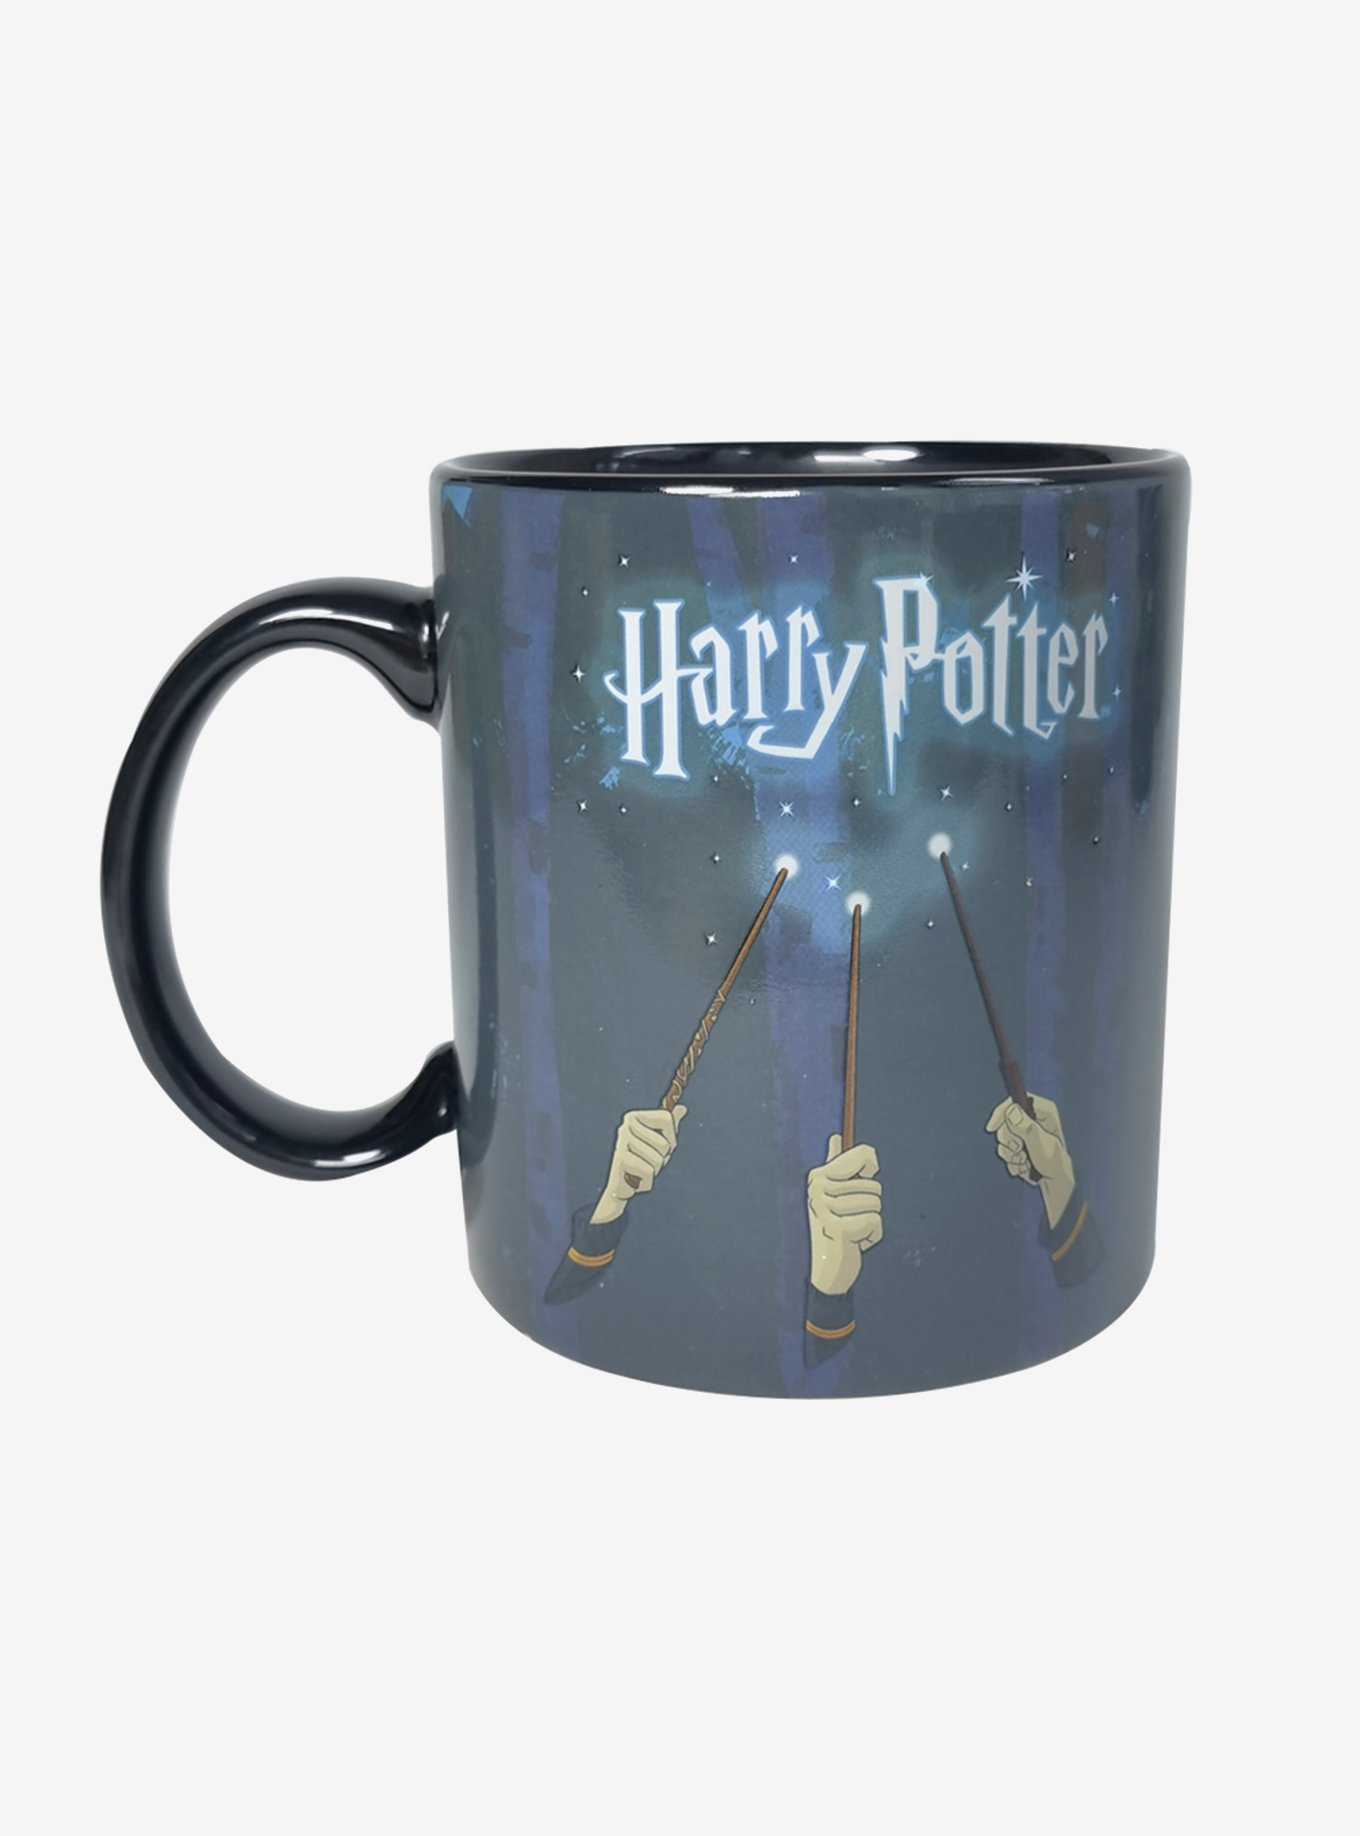 Mug j'peux pas y'a Harry Potter - Tasse